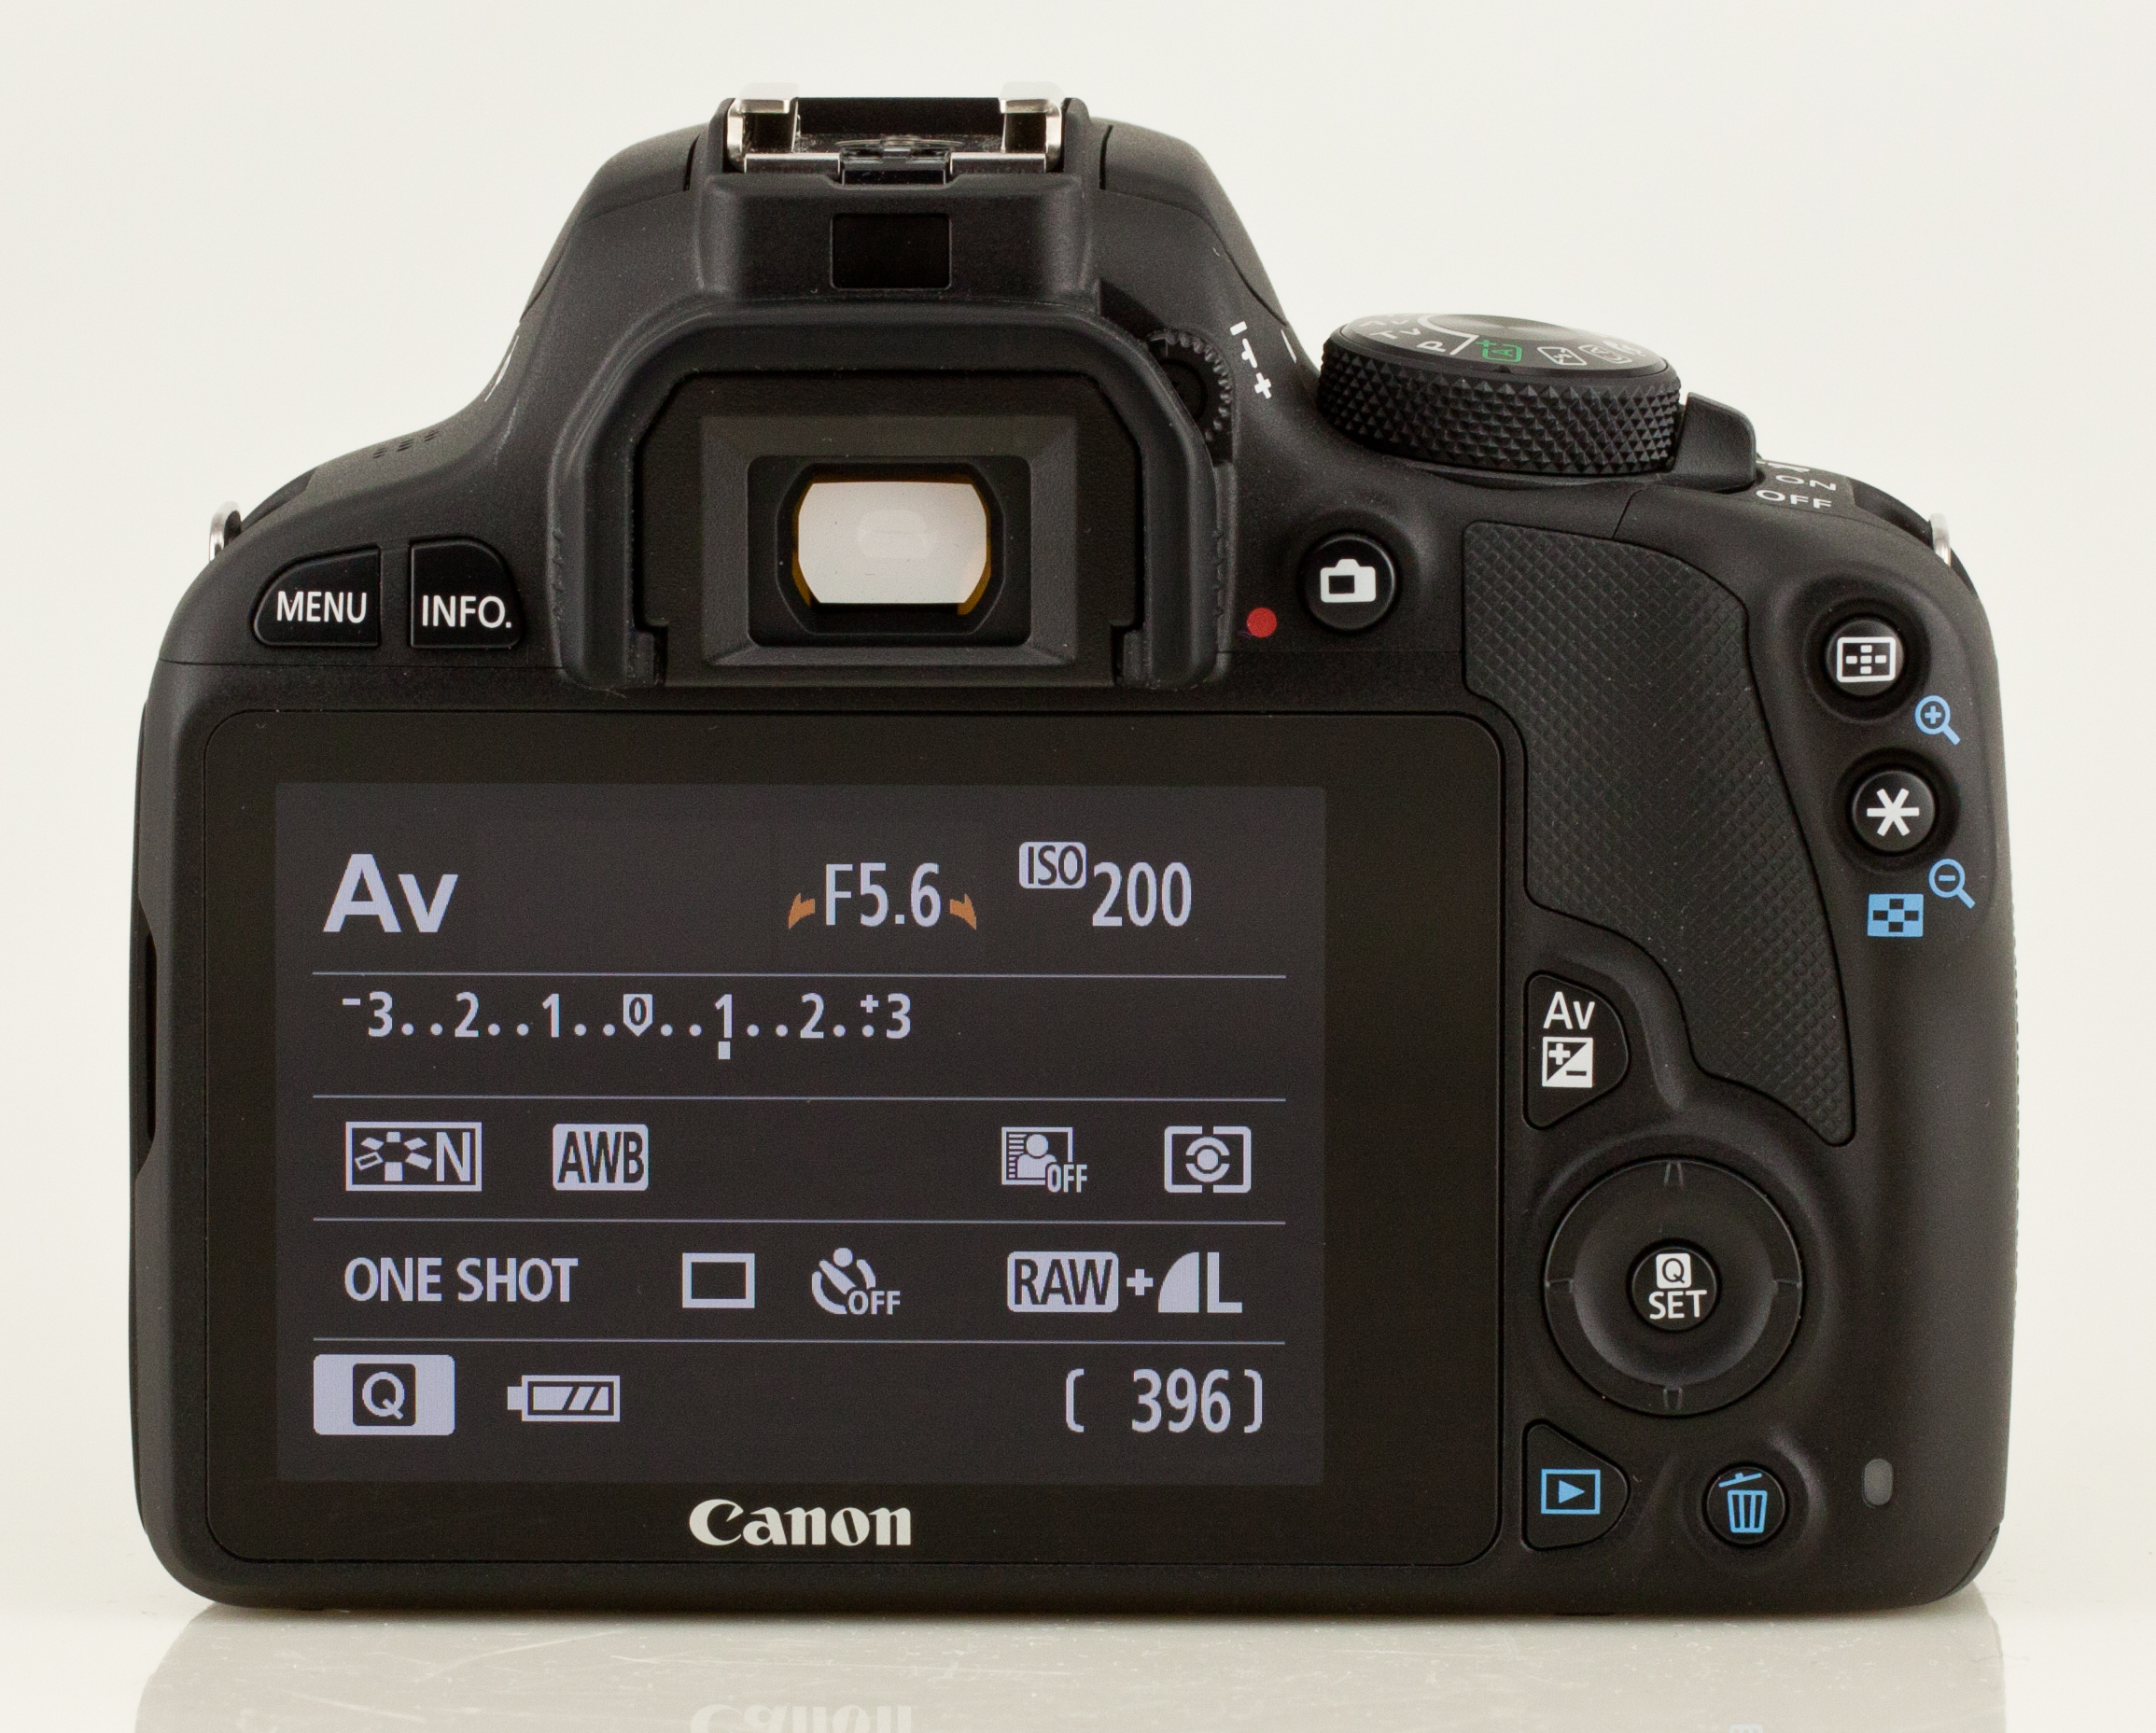 Canon EOS 100D - Budowa, jako wykonania i funkcjonalno